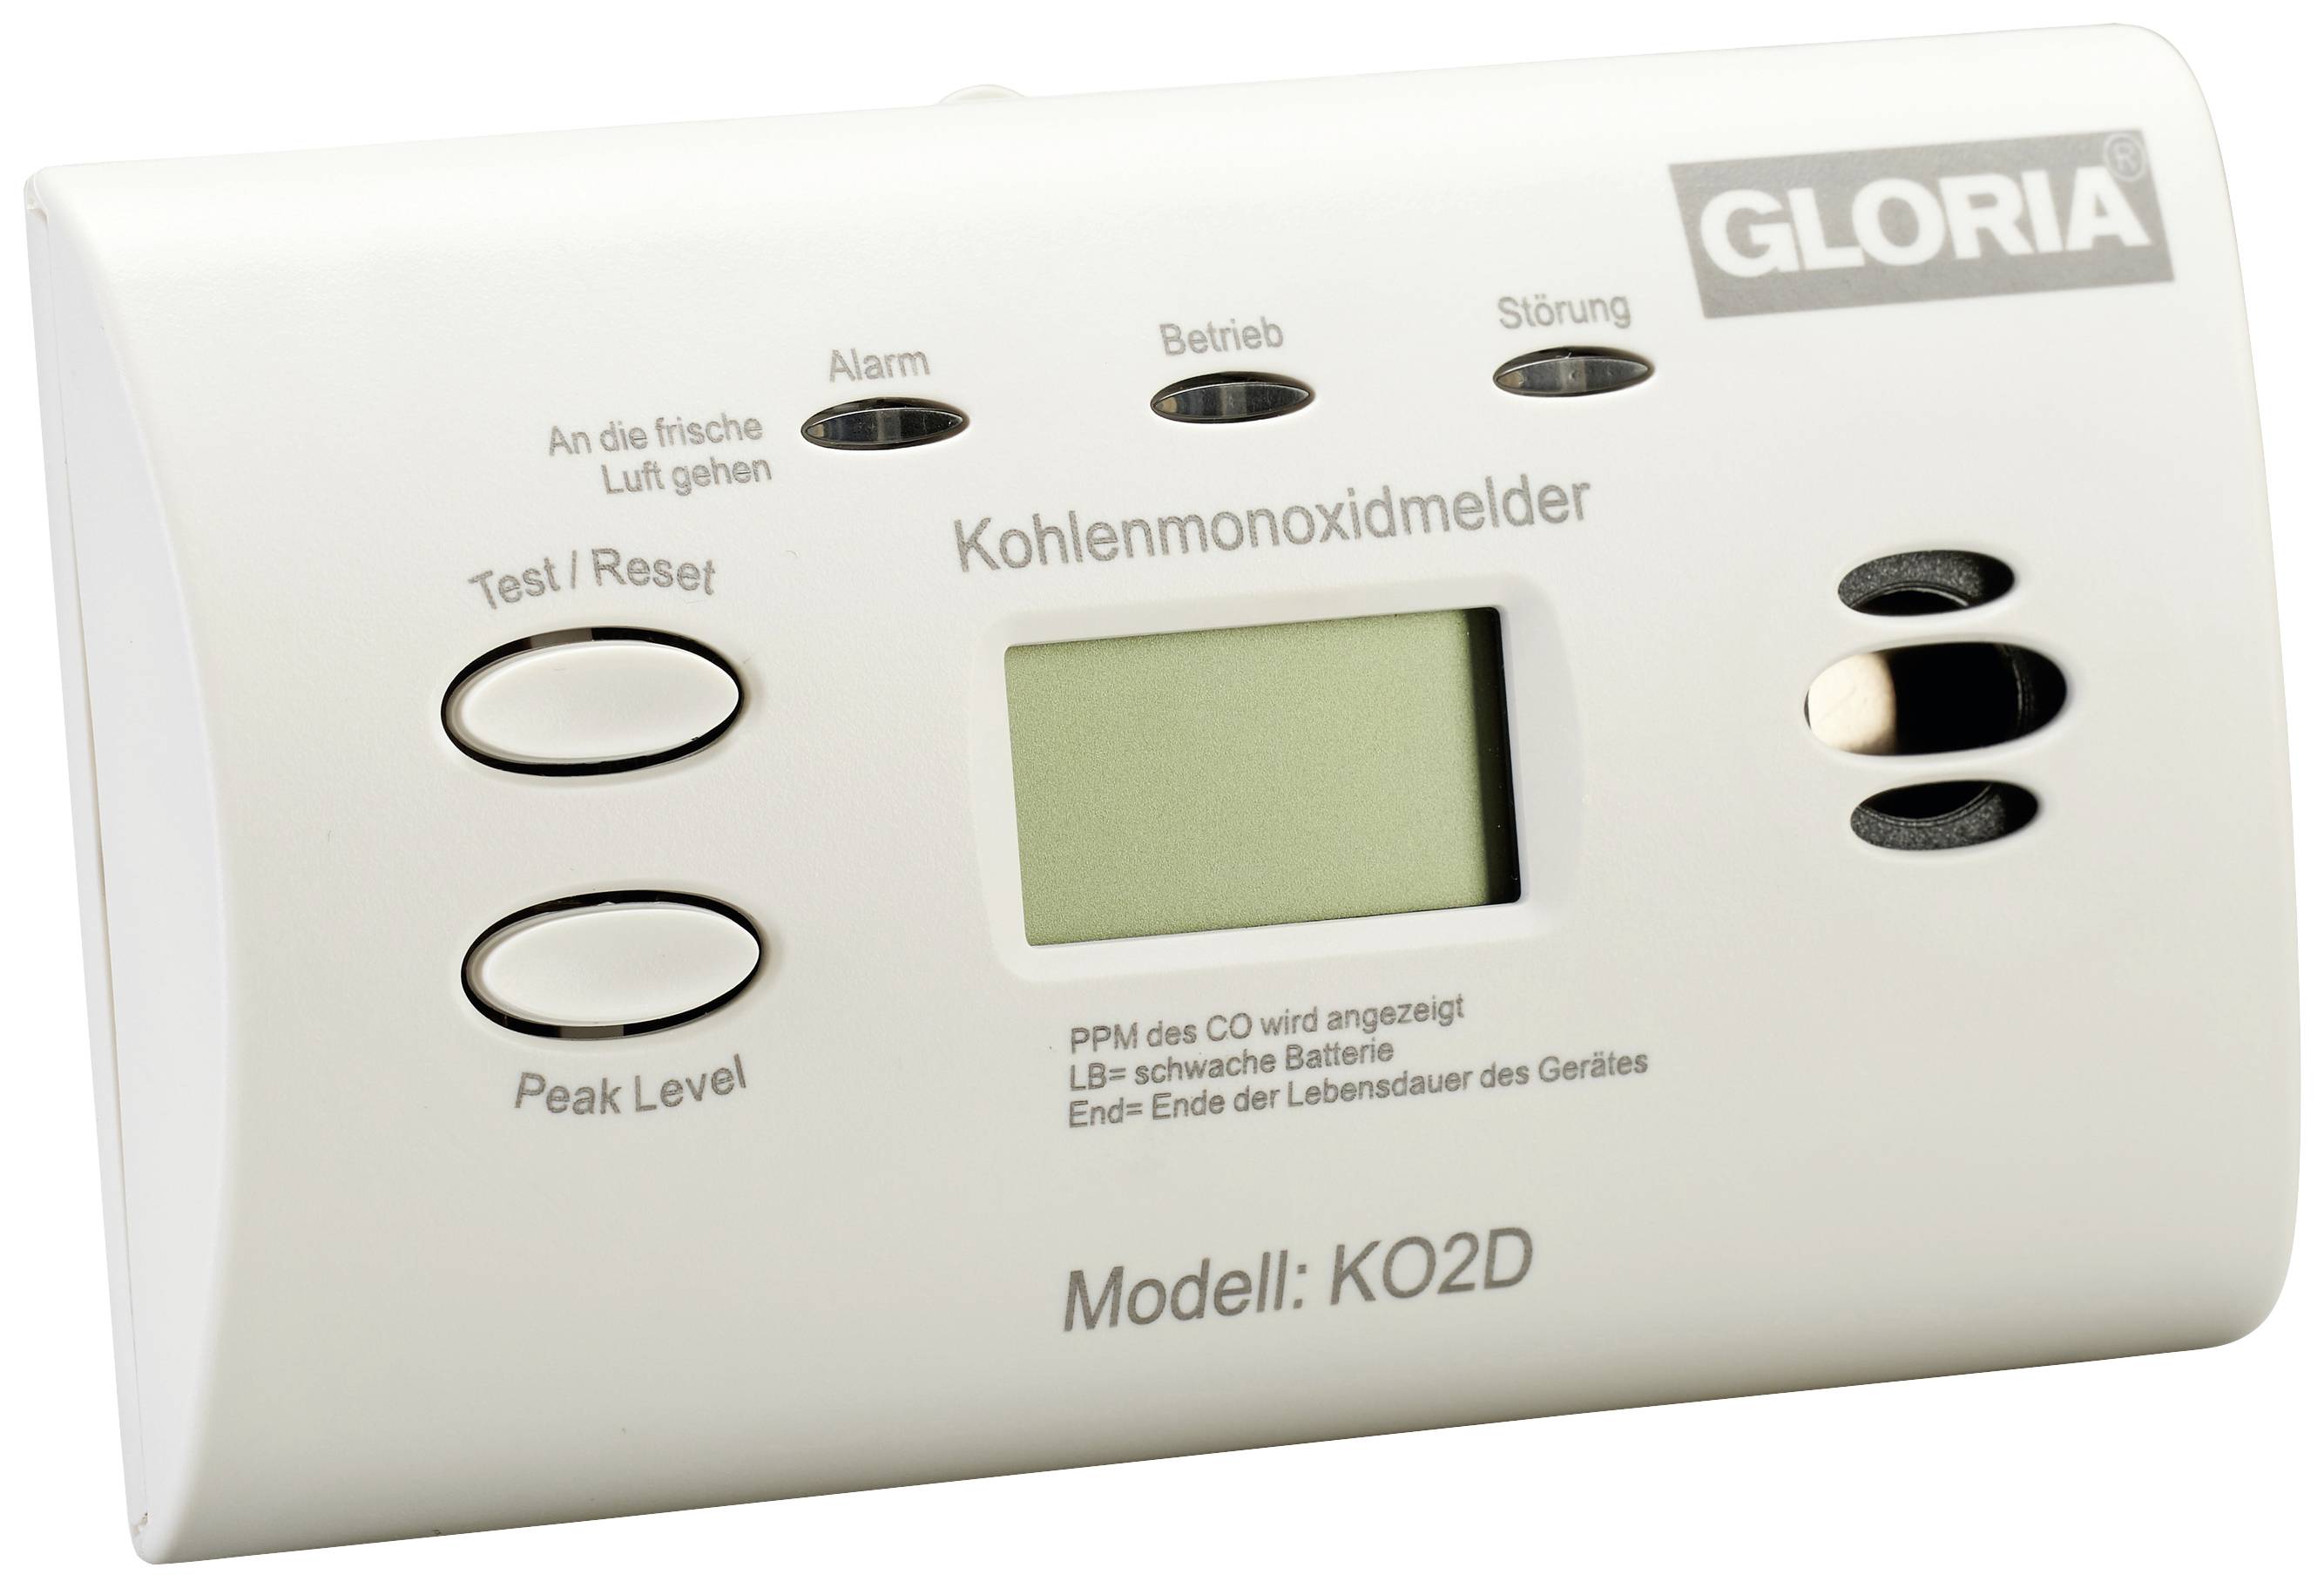 Kohlenmonoxid Melder LED Display inkl. Batterien, CO Melder, Wohnwagen